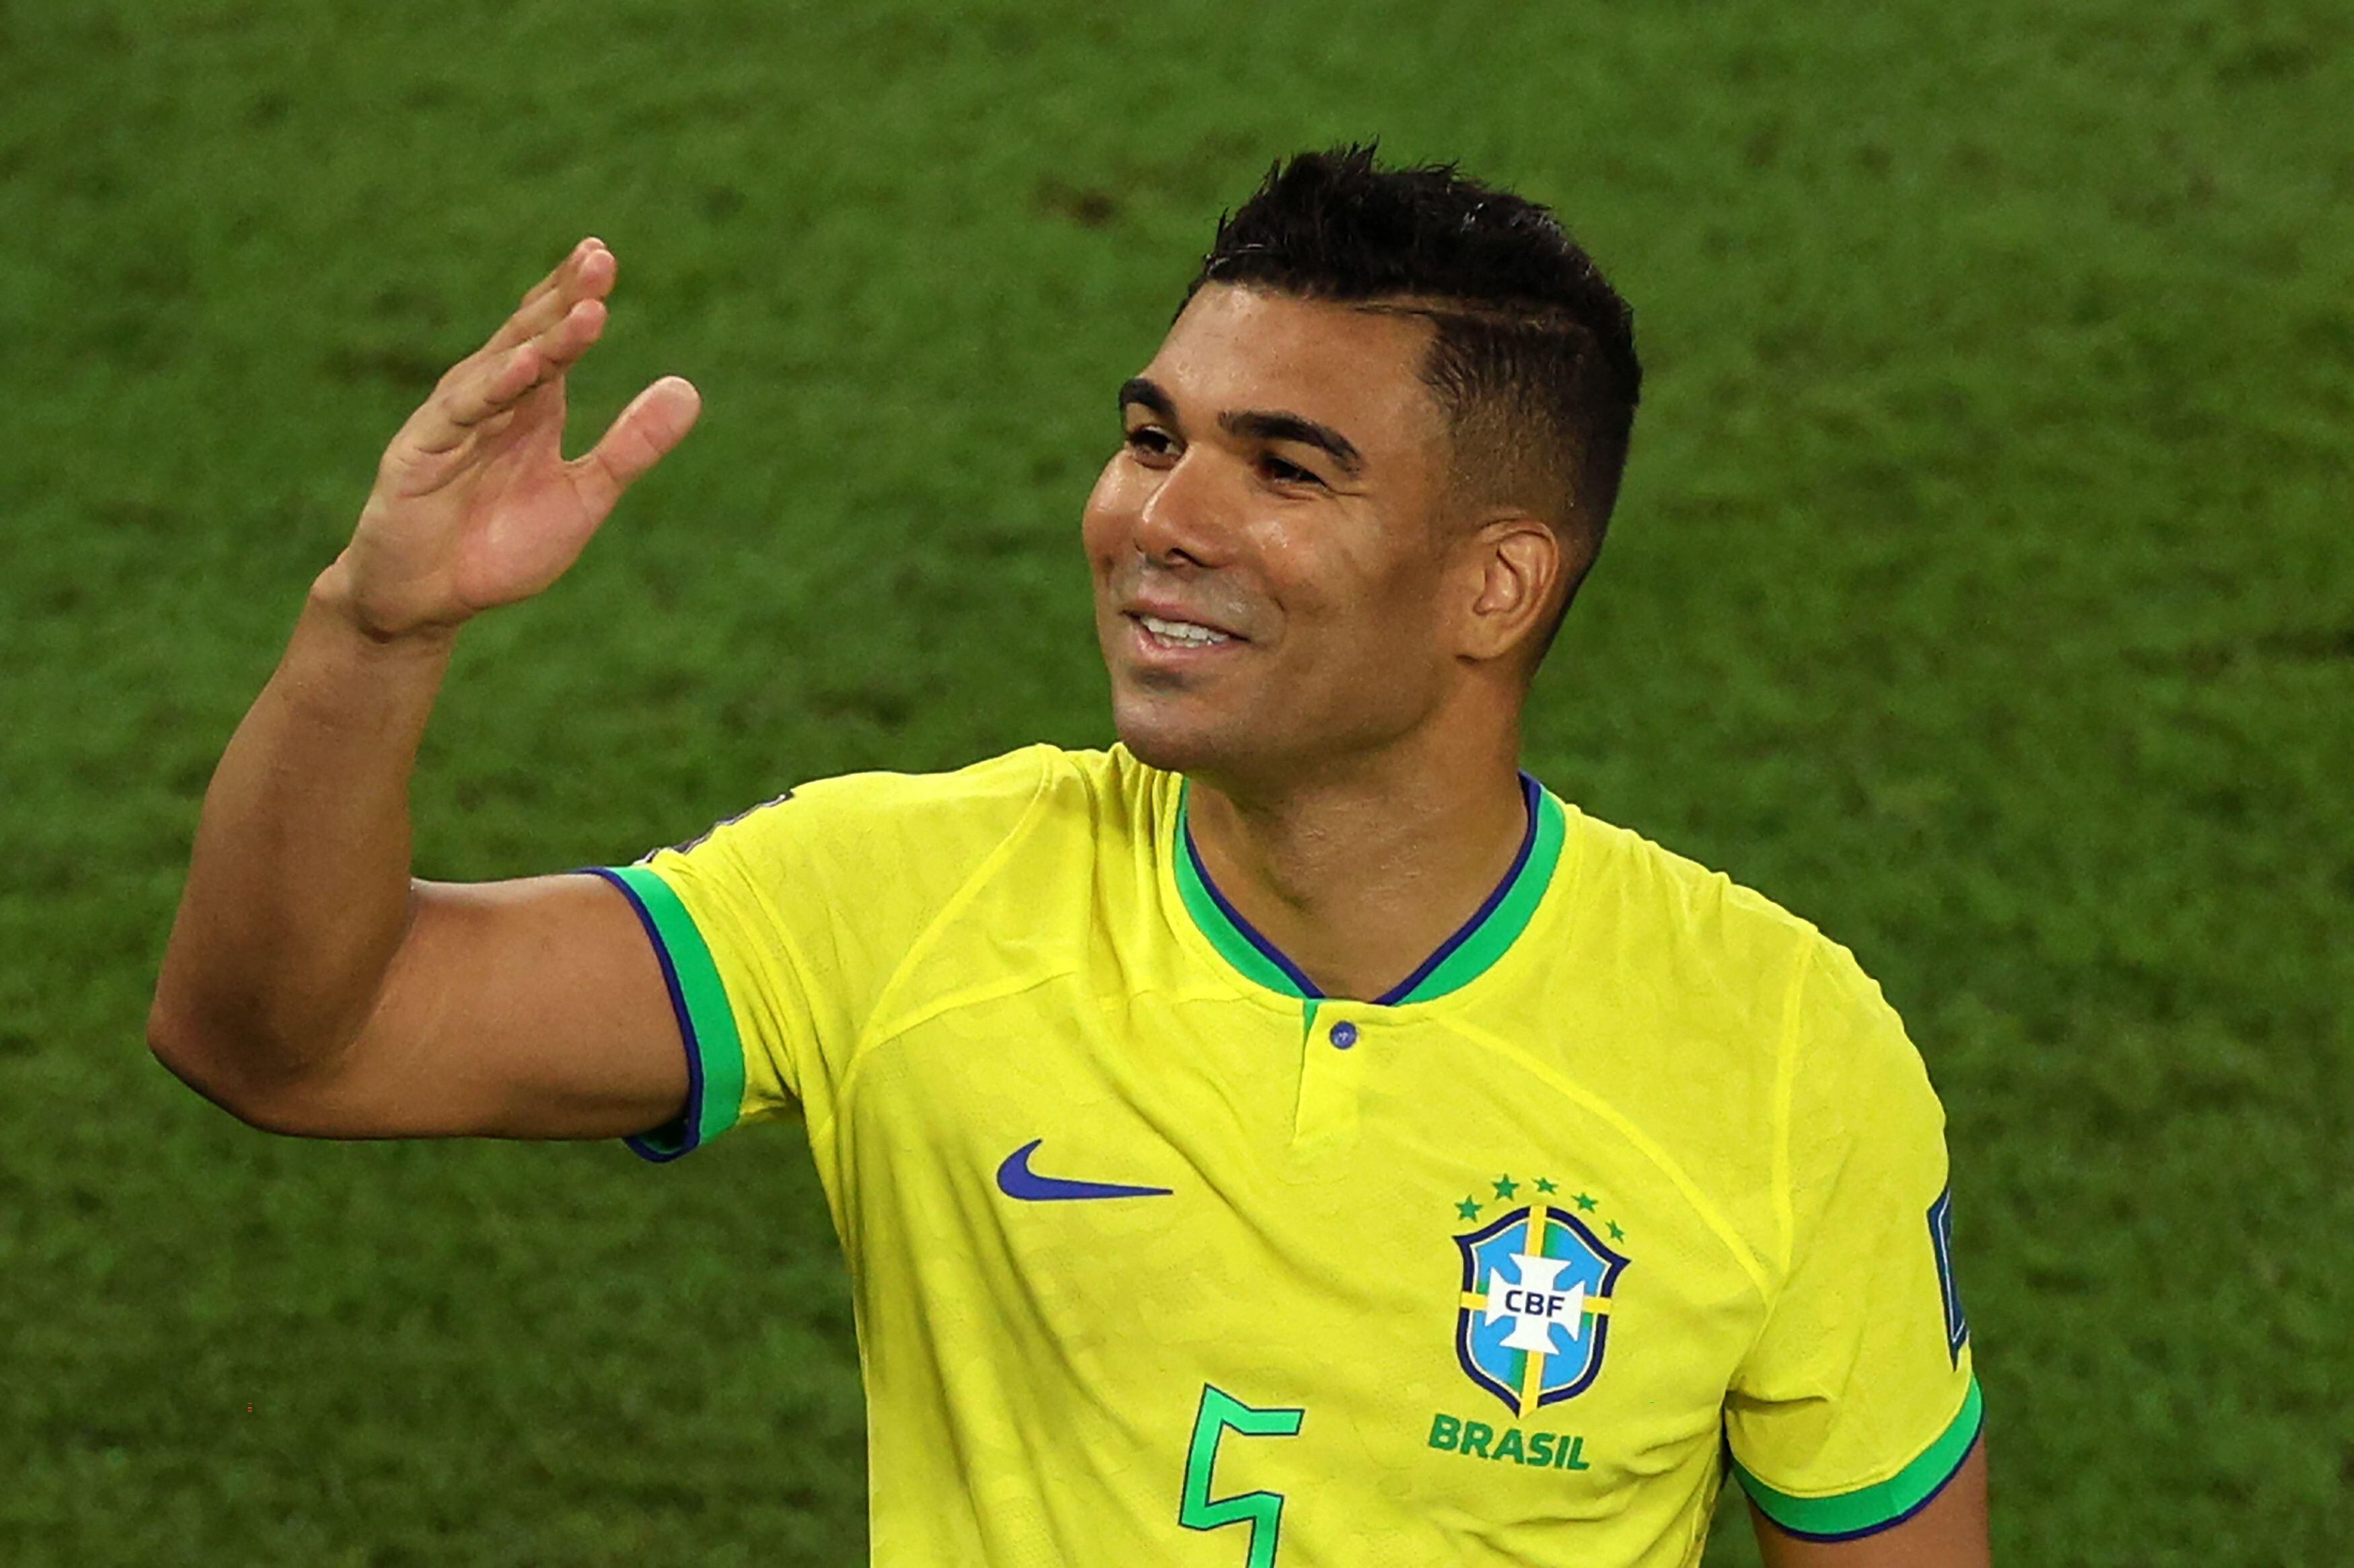 Um olhar sobre os melhores momentos do Brasil nas fases de grupos